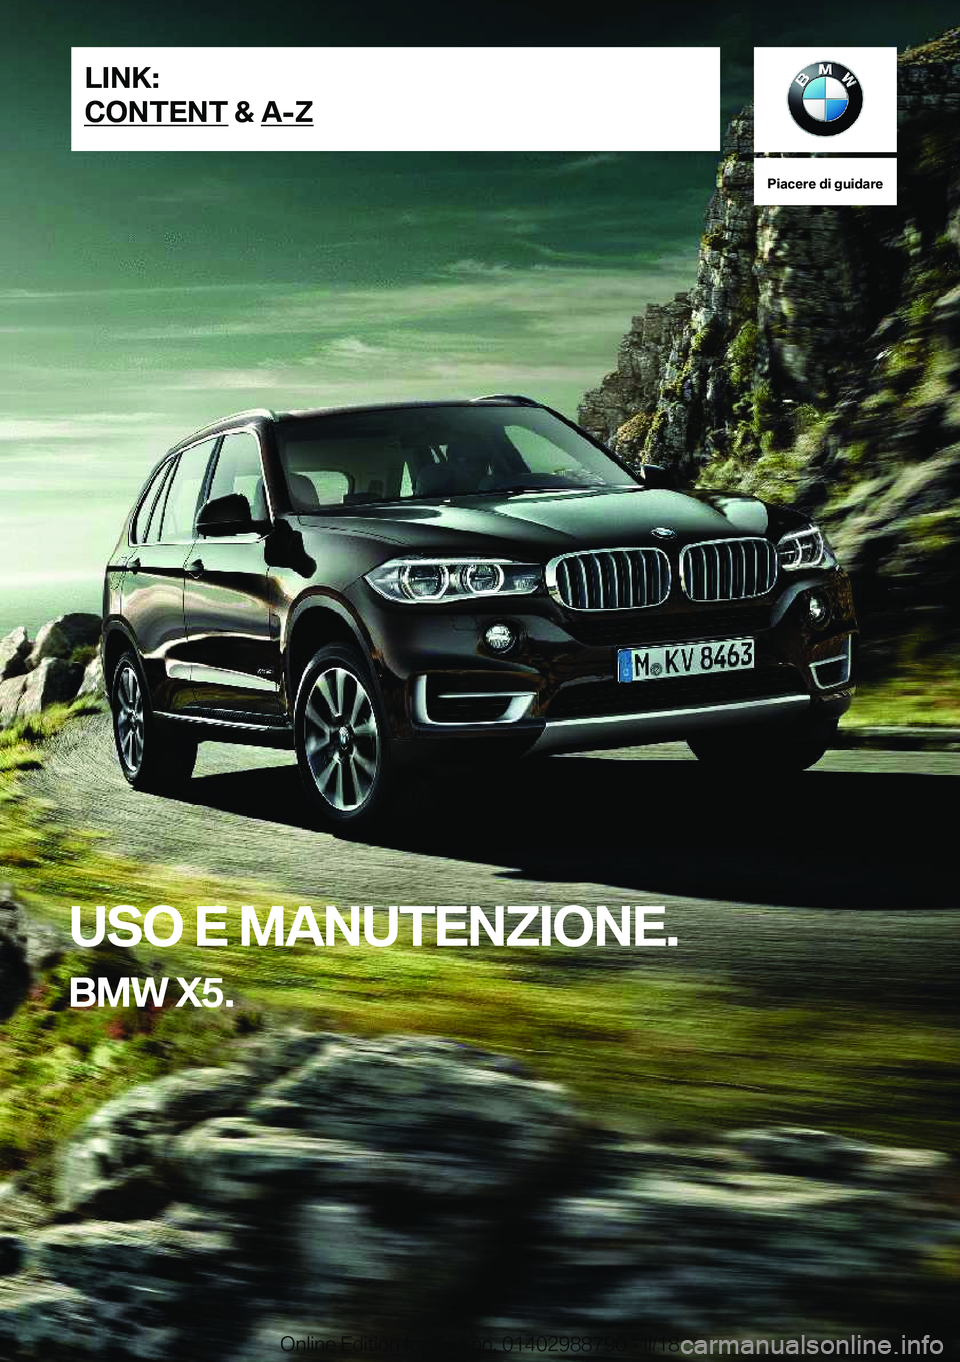 BMW X5 2018  Libretti Di Uso E manutenzione (in Italian) �P�i�a�c�e�r�e��d�i��g�u�i�d�a�r�e
�U�S�O��E��M�A�N�U�T�E�N�Z�I�O�N�E�.
�B�M�W��X�5�.�L�I�N�K�:
�C�O�N�T�E�N�T��&��A�-�Z�O�n�l�i�n�e� �E�d�i�t�i�o�n� �f�o�r� �P�a�r�t� �n�o�.� �0�1�4�0�2�9�8�8�